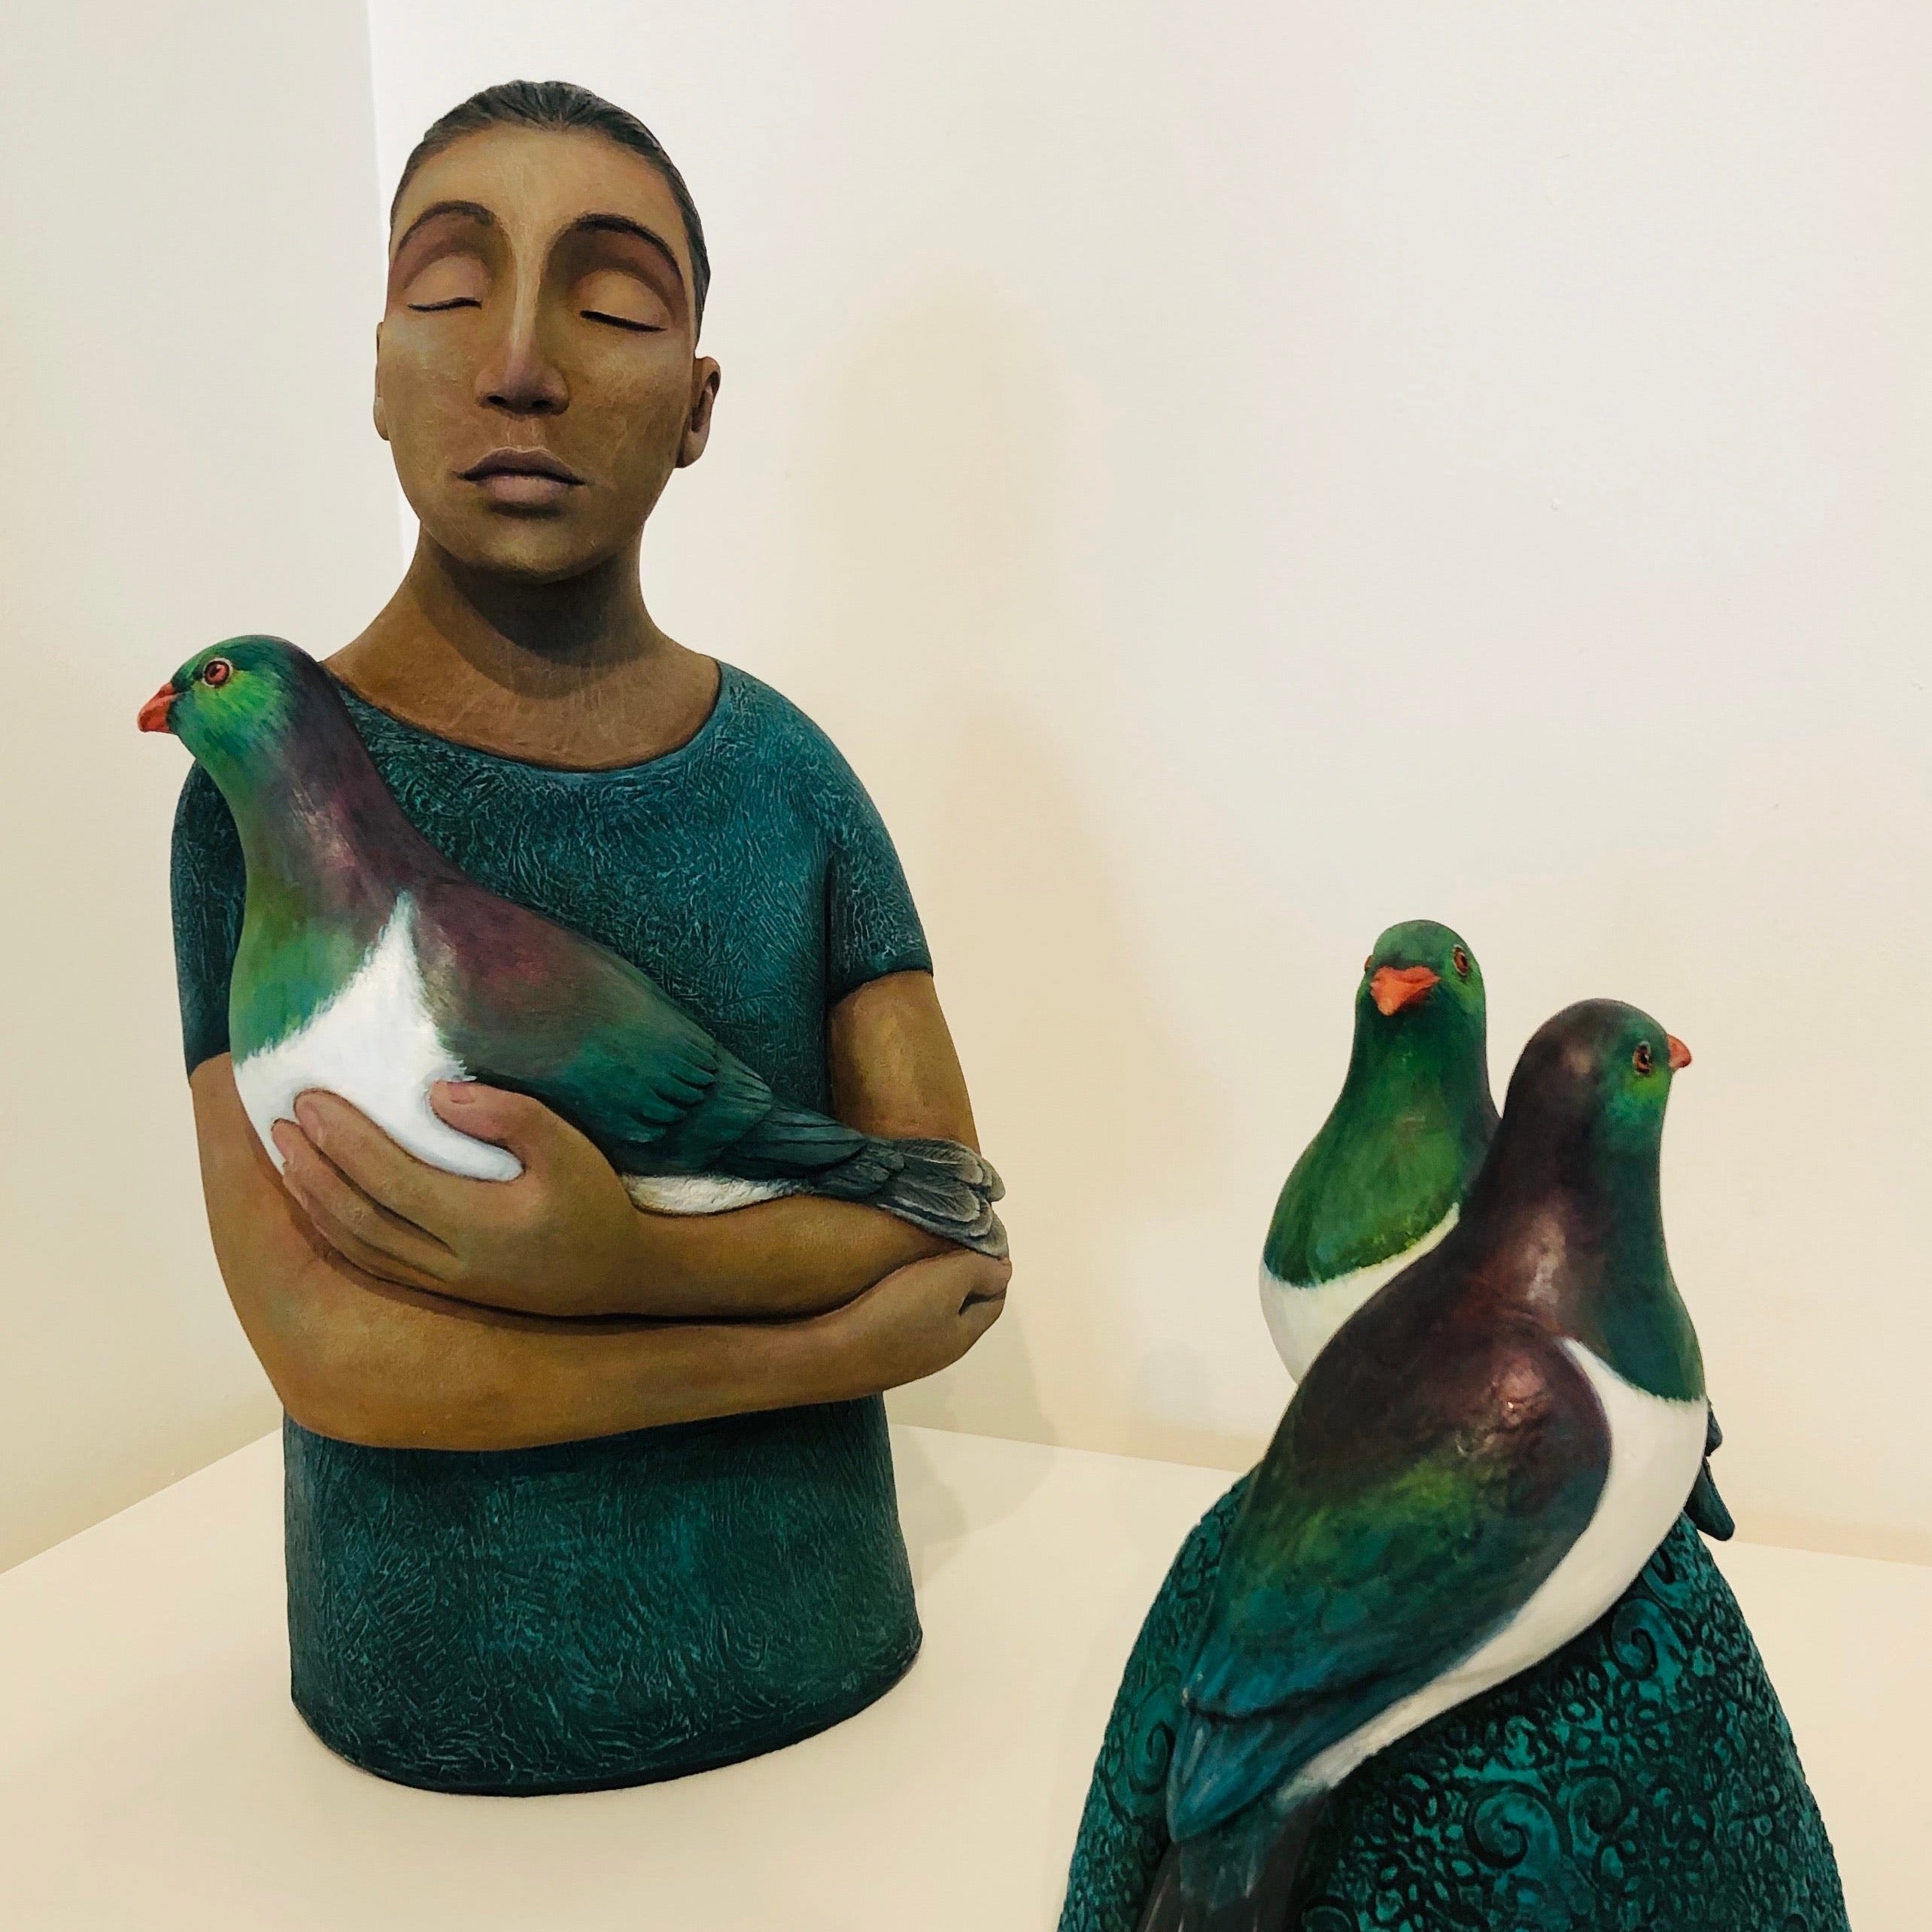 Sculpture of person holding a kereru/wood pigeon, next to a separate sculpture of kereru